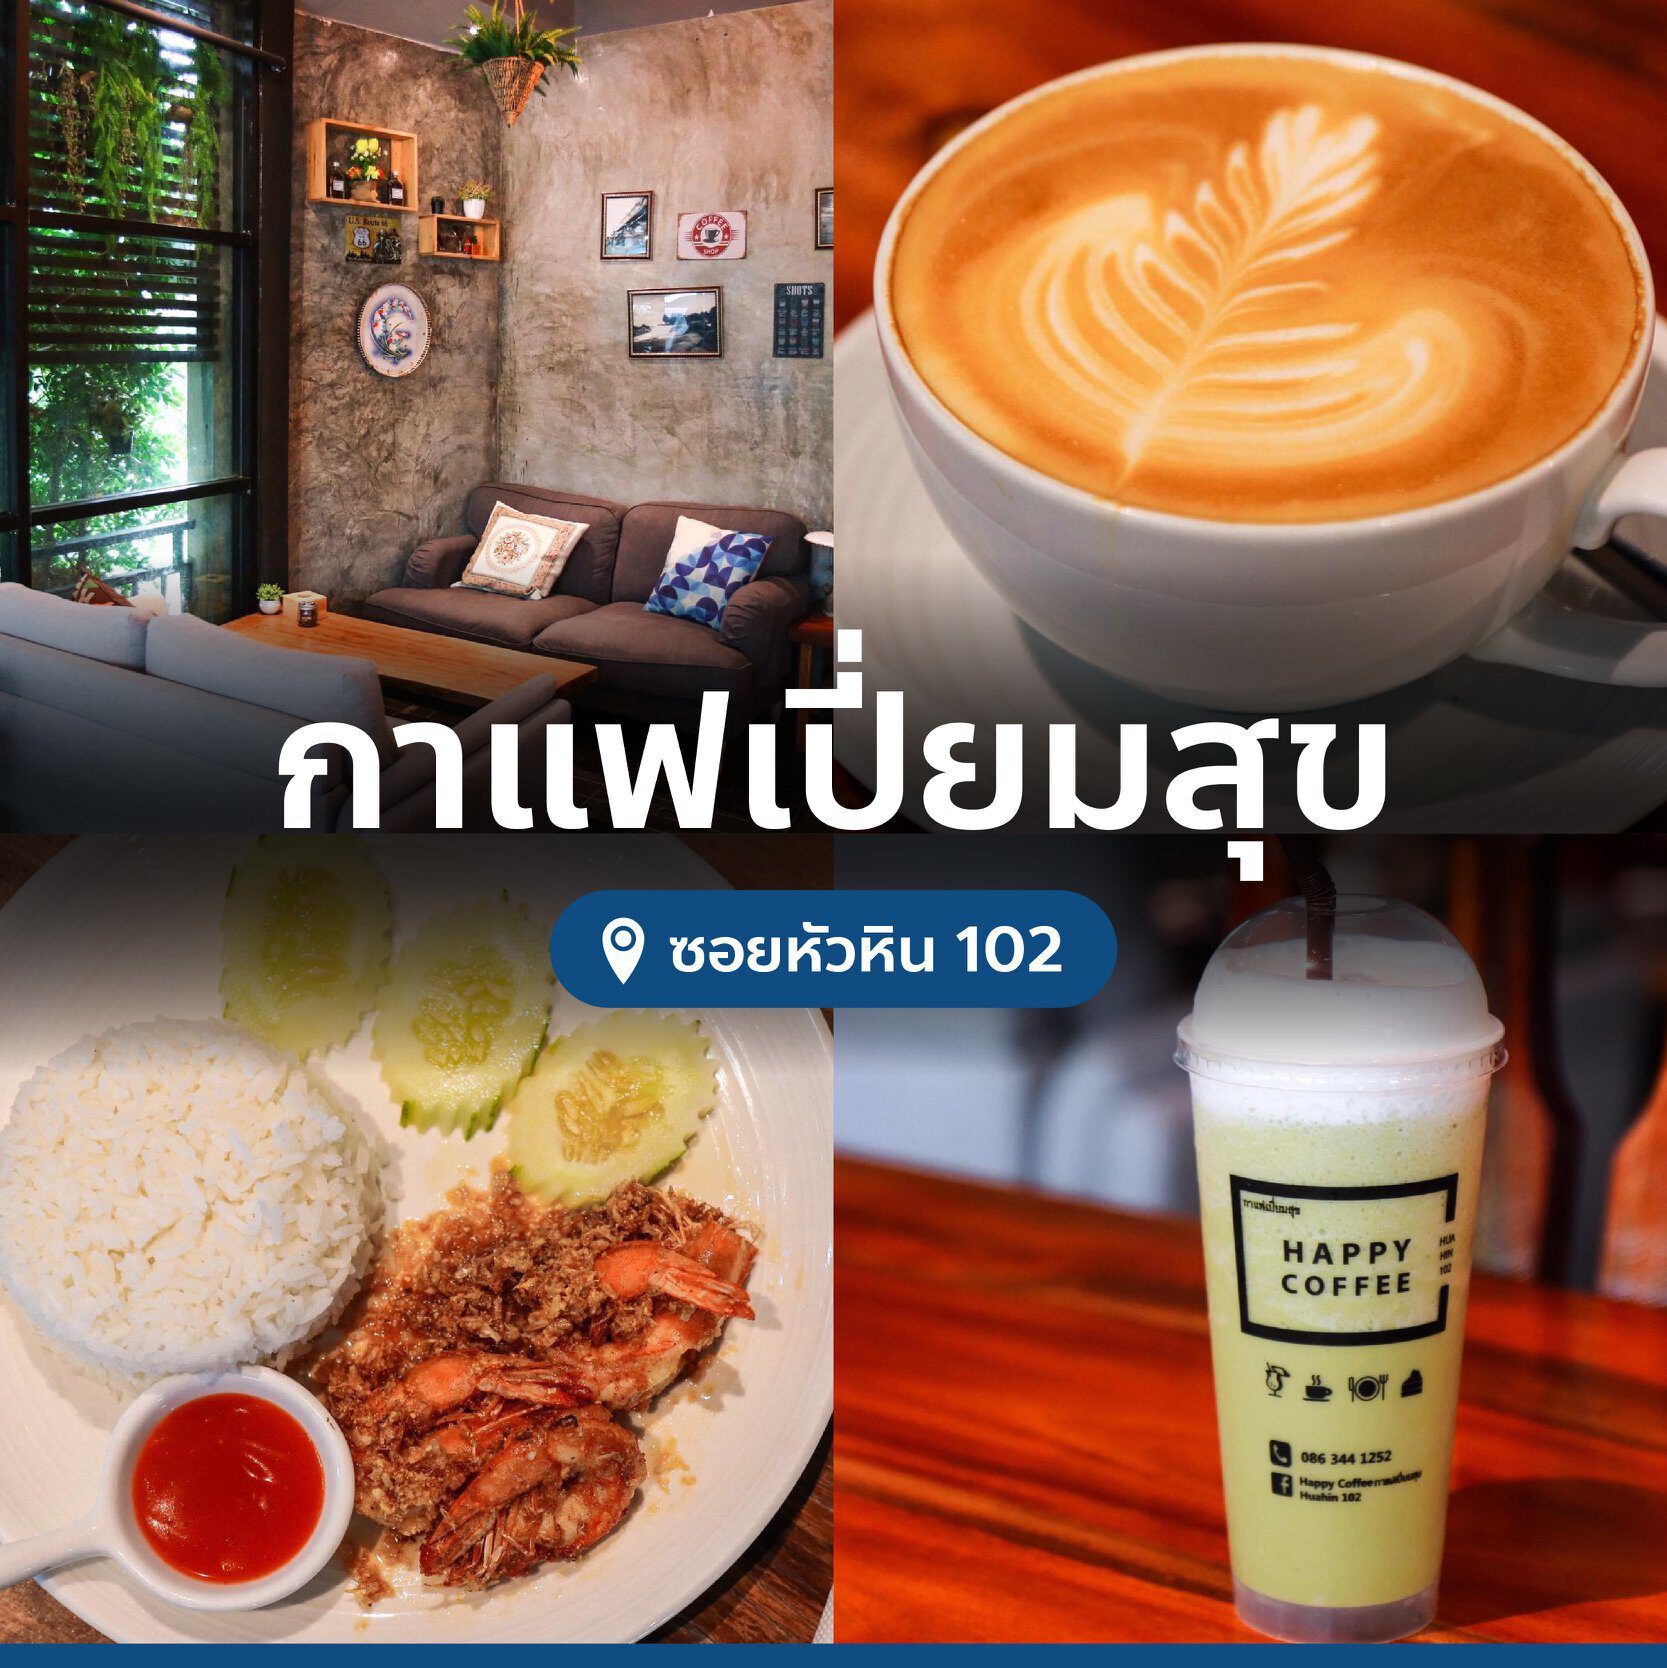 happy-coffee-cafe-huahin-102-5918208